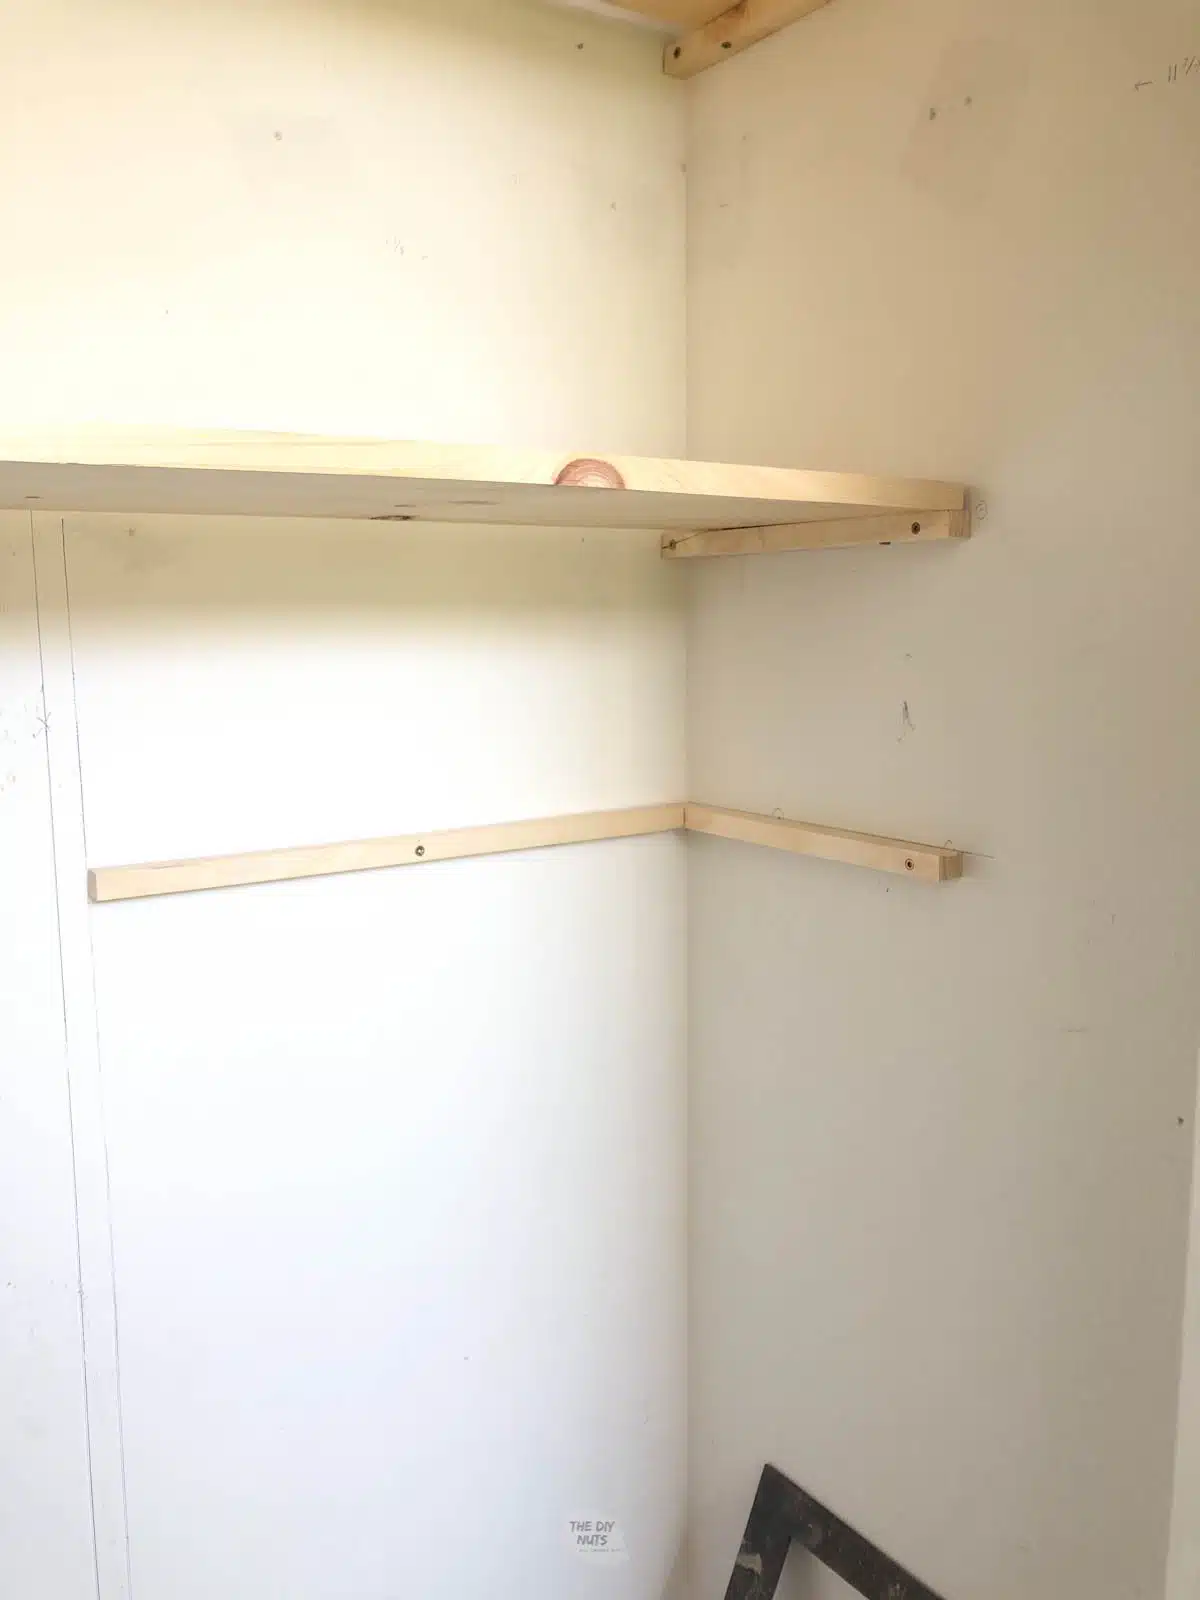 wooden corner bracket shelf under wooden closet shelf.